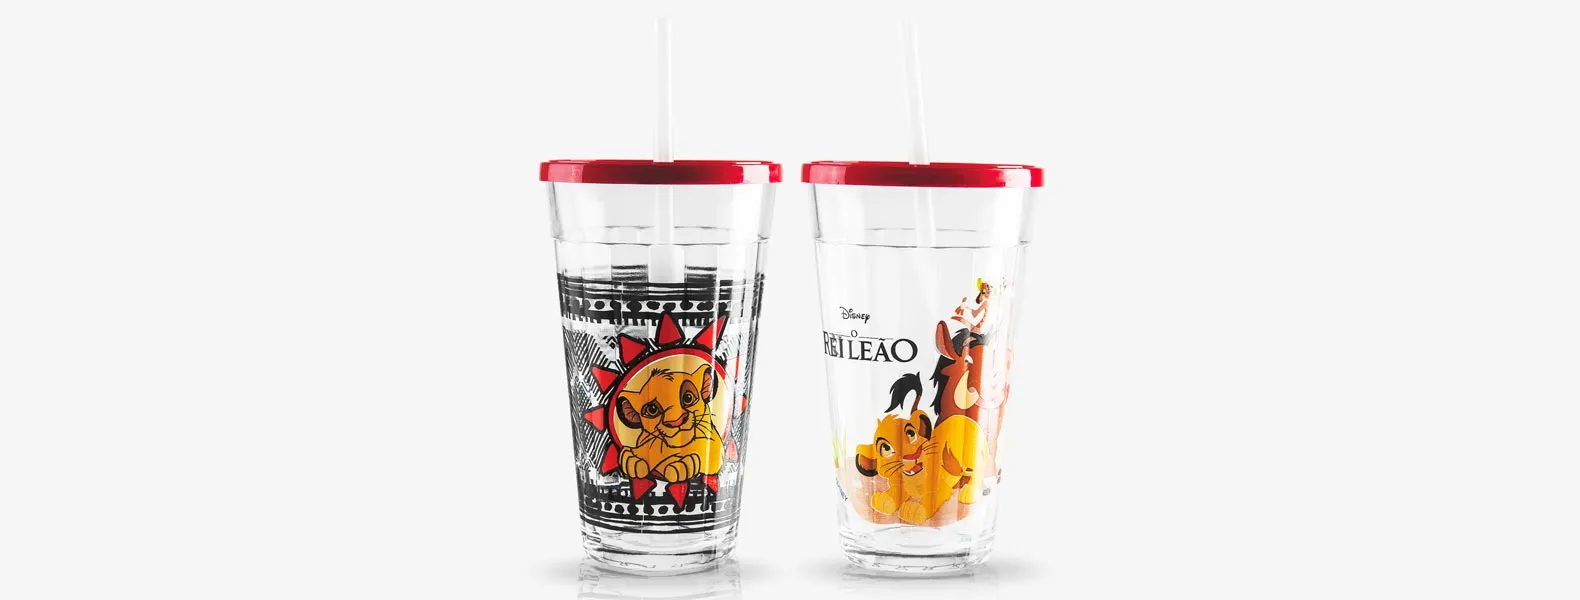 Jogo de copos personalizados contendo dois copos do Rei Leão em vidro.